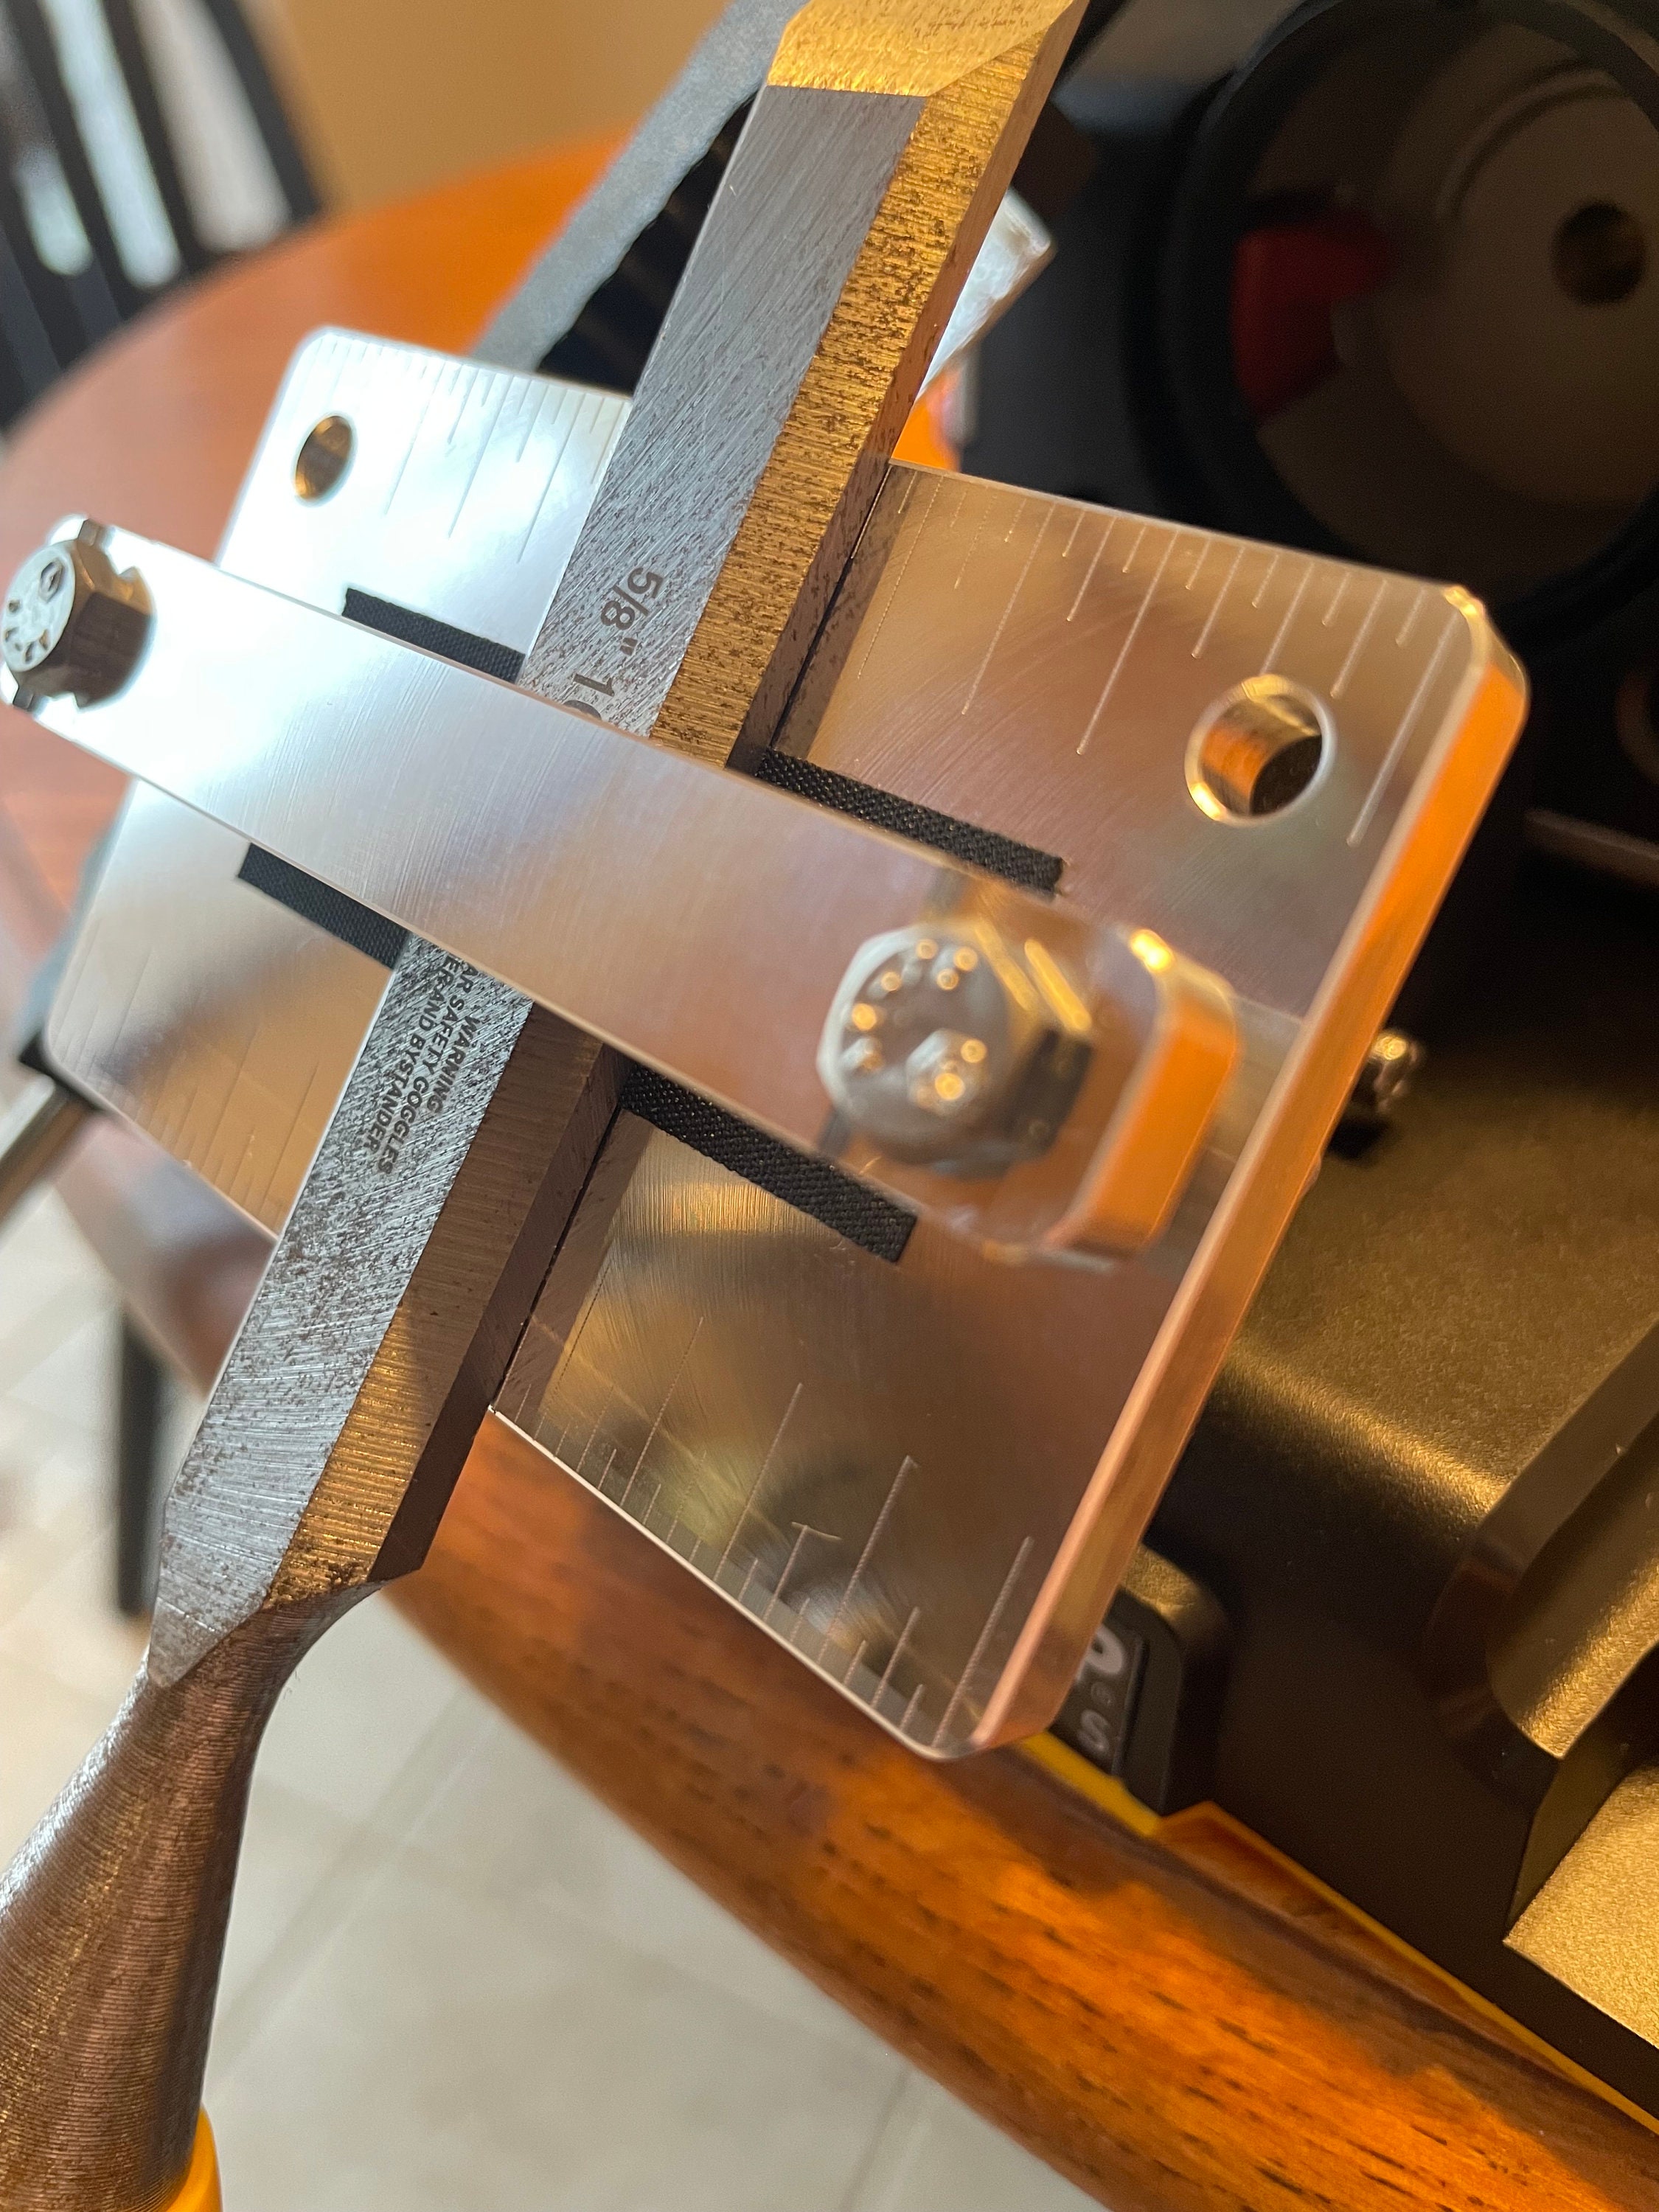 3D printed mini belt grinder for knife sharpening : r/sharpening